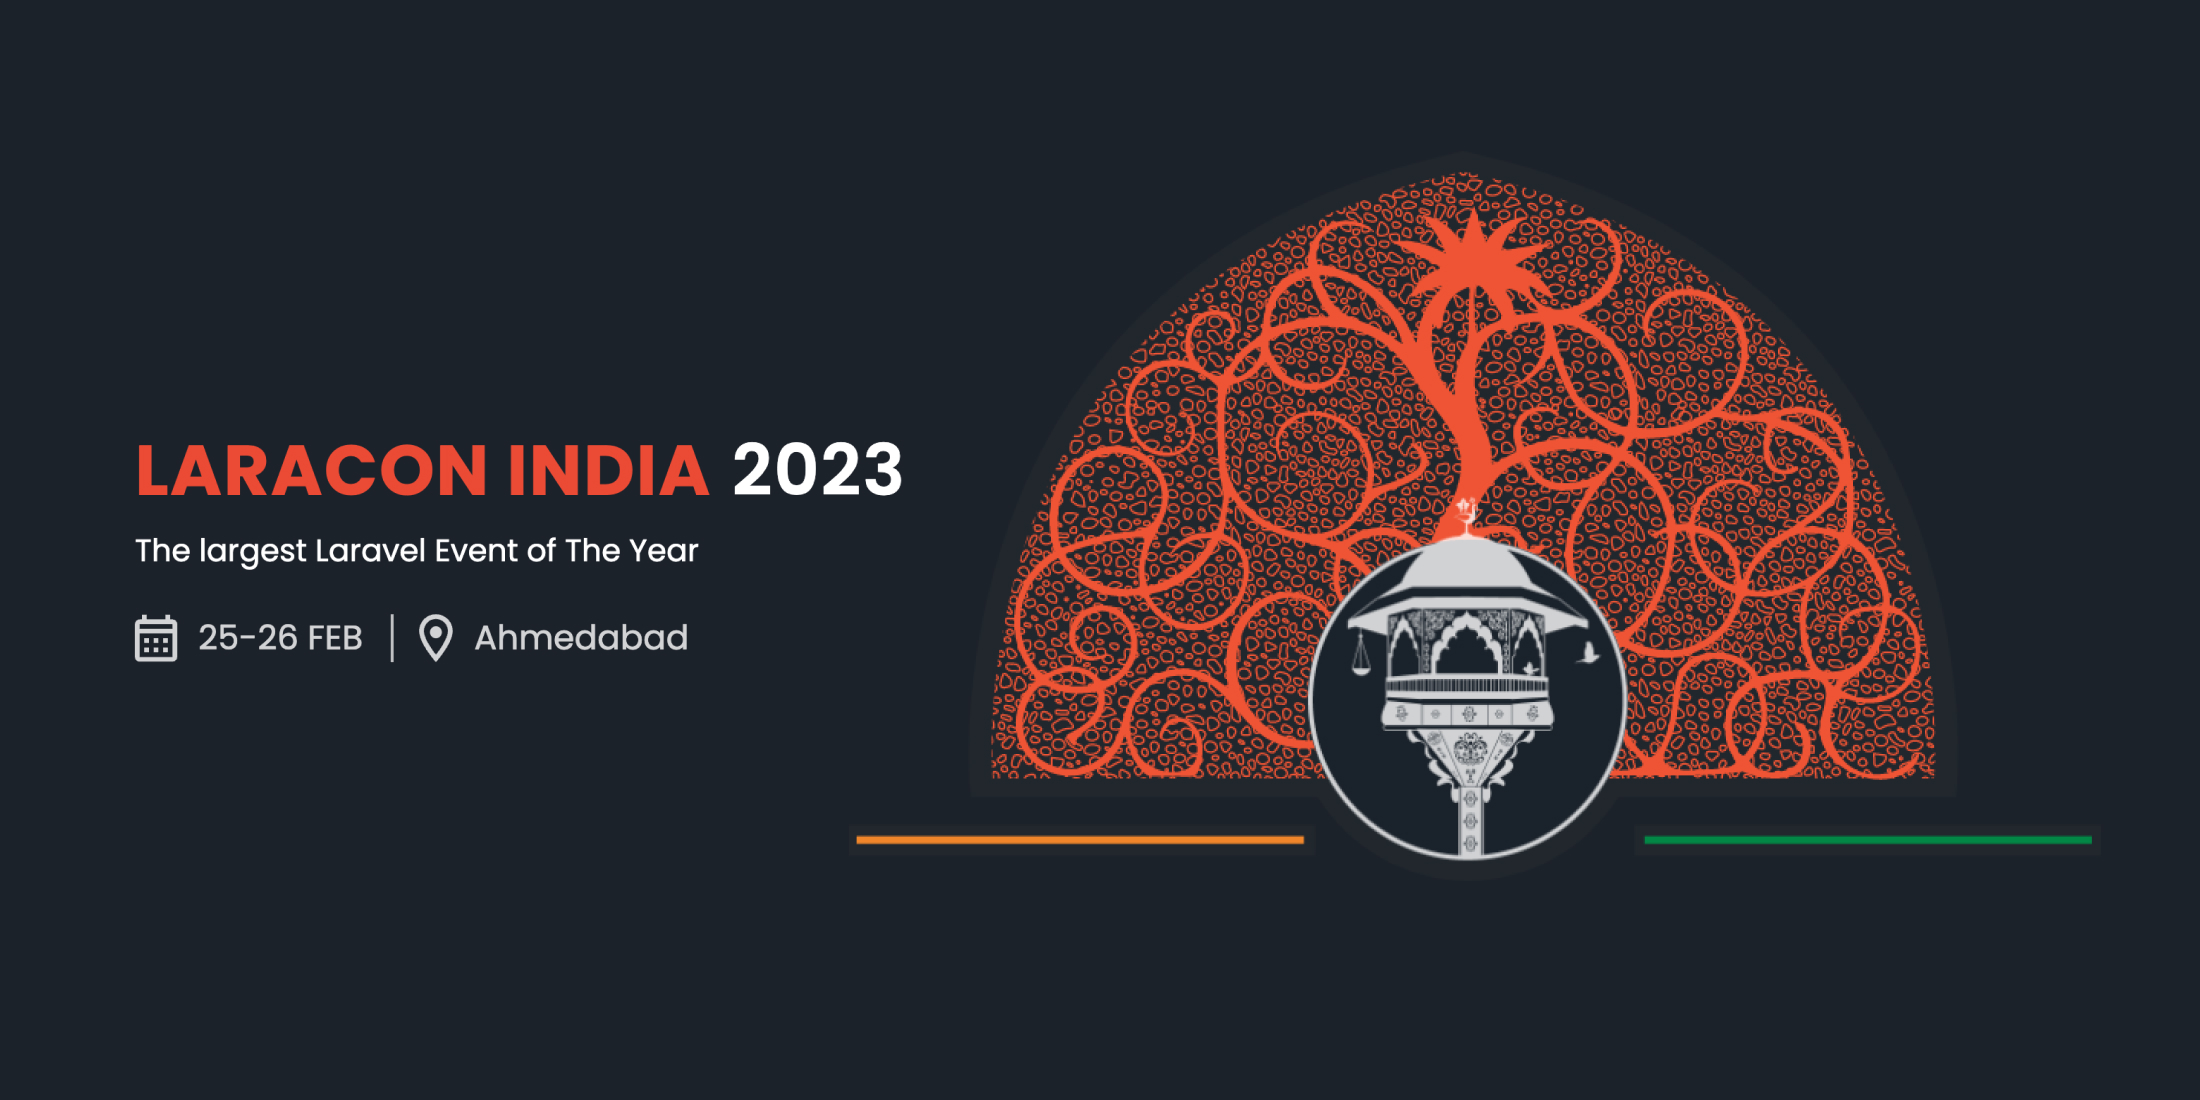 Laracon India 2023 image